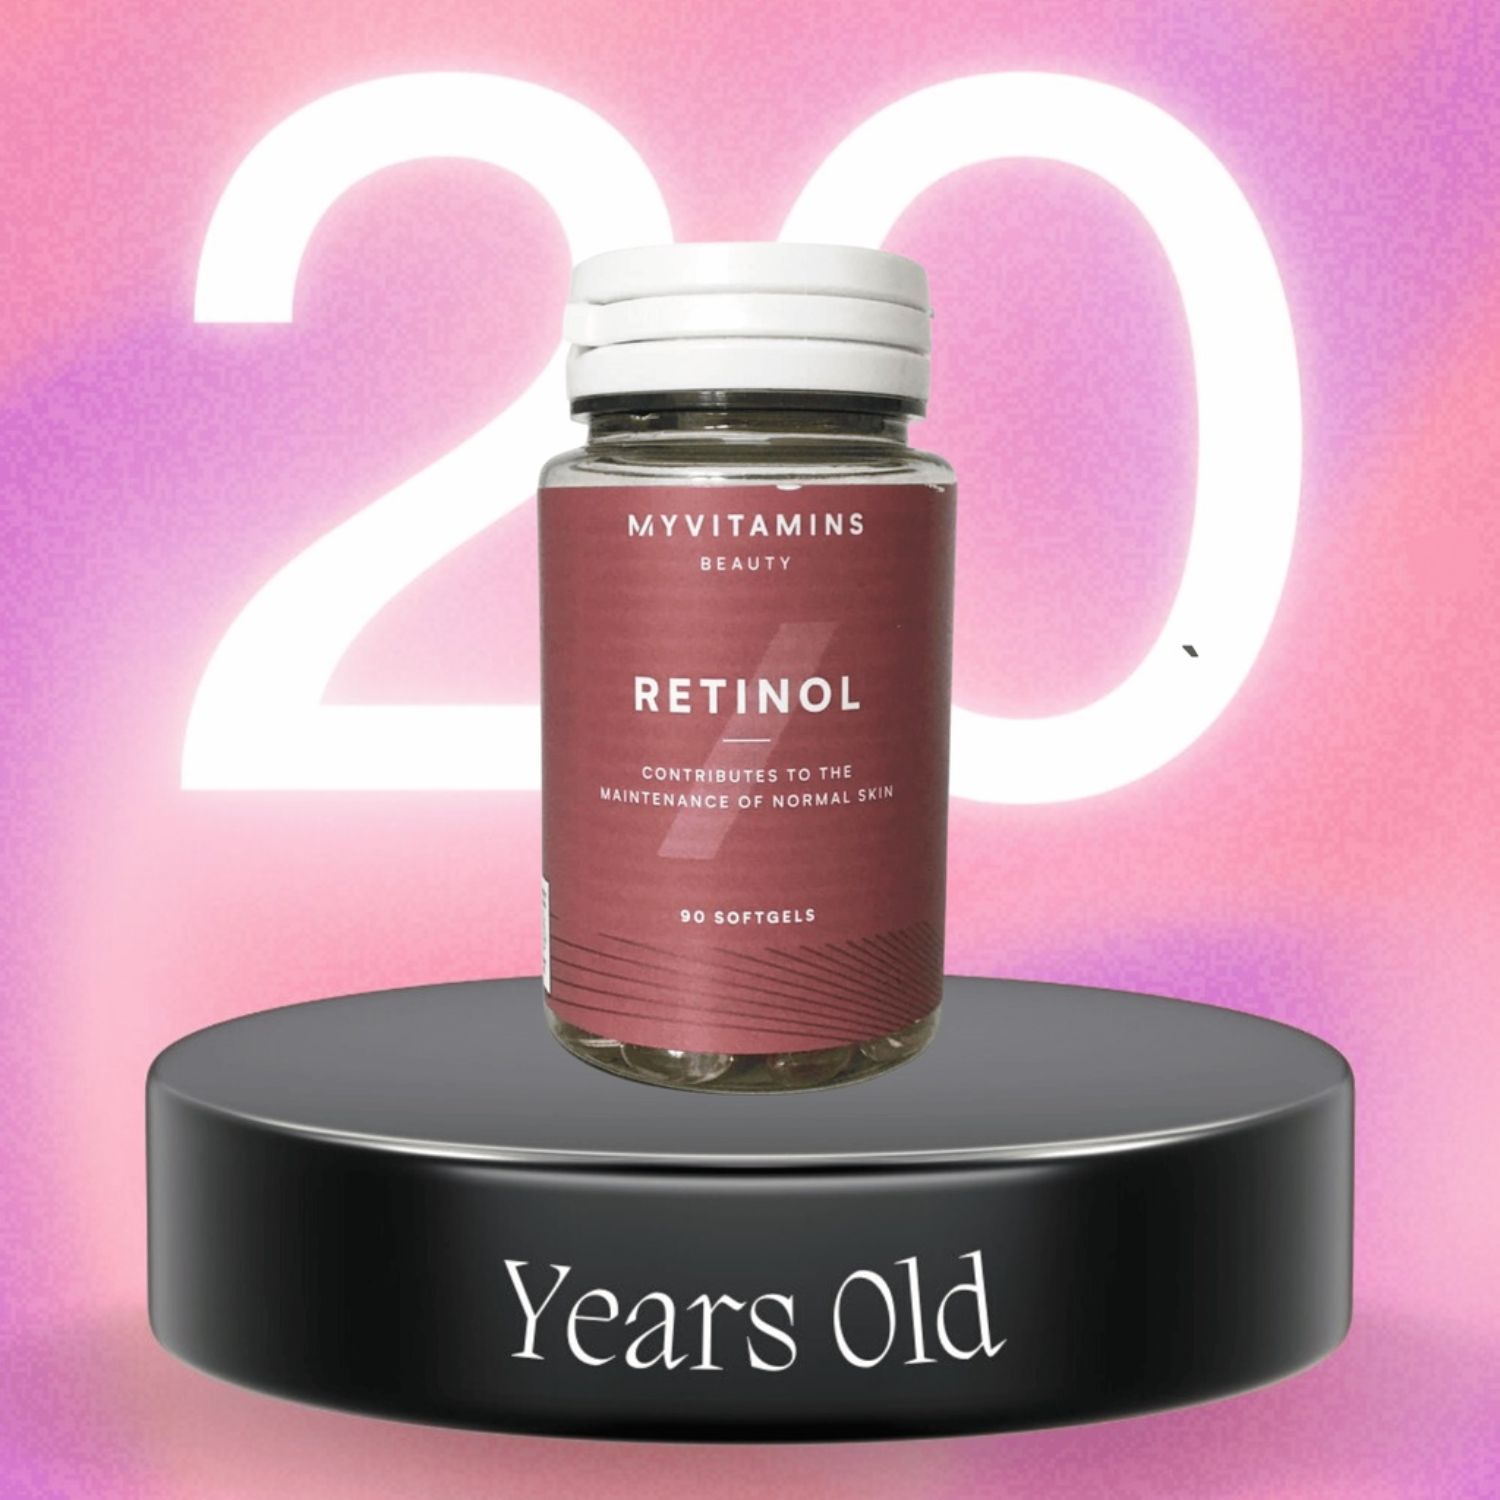 Retinol Myvitamins Beauty 90v - Viên Uống Trẻ Hóa Da